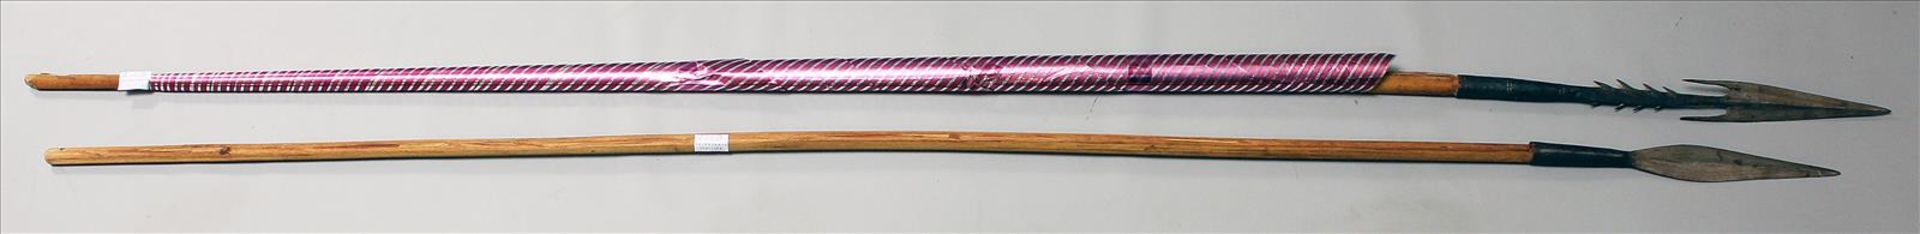 2 afrikanische Speere.Eisenklingen. Holzschäfte. L. 140 bzw. 149 cm. - Image 2 of 2